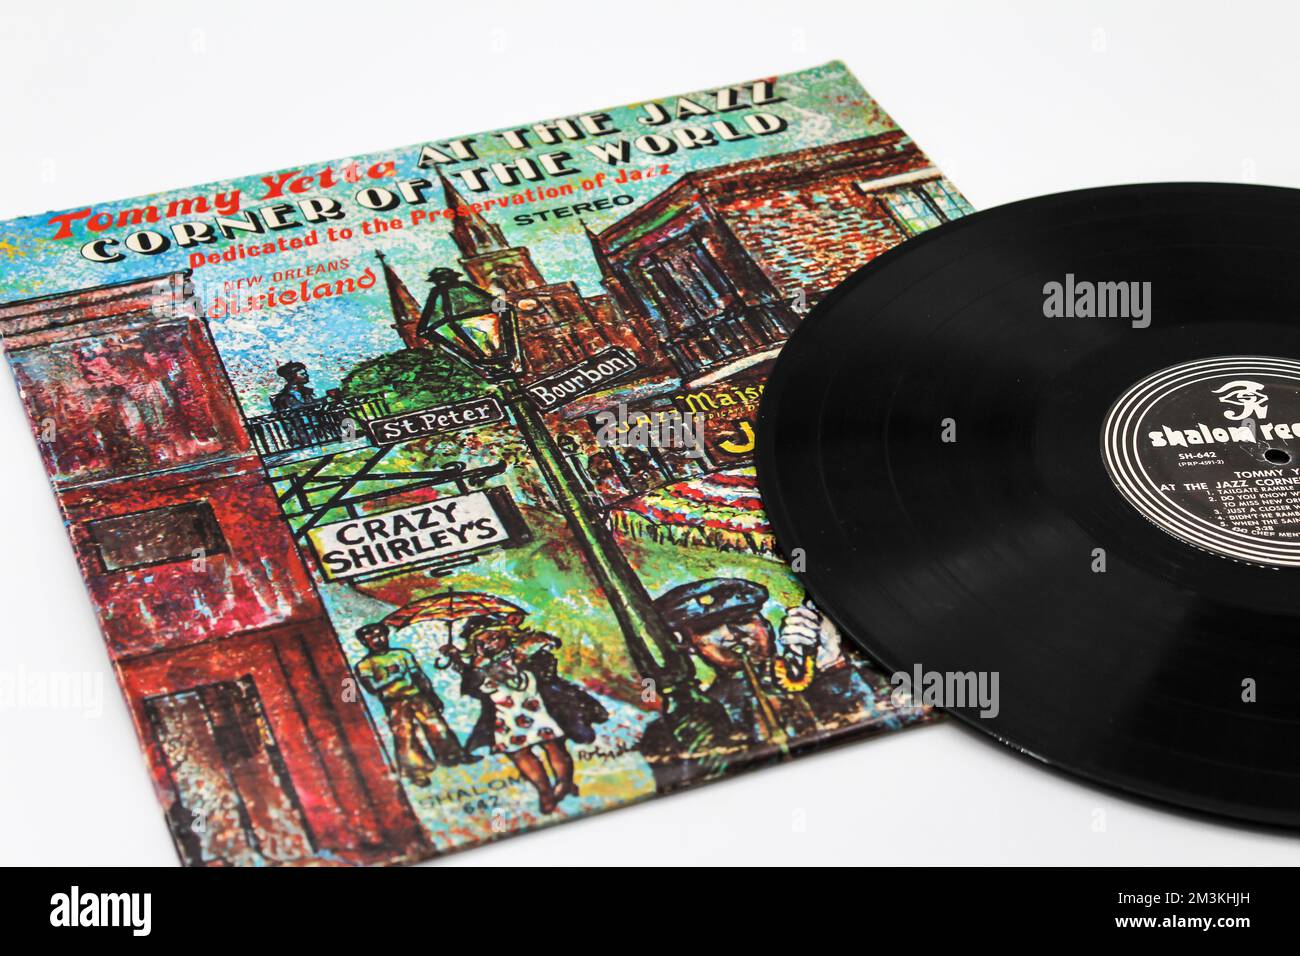 Tommy Yetta, in der Jazz-Ecke des World-Musikalbums auf Vinyl-Platte, lp-Albumcover. Stockfoto